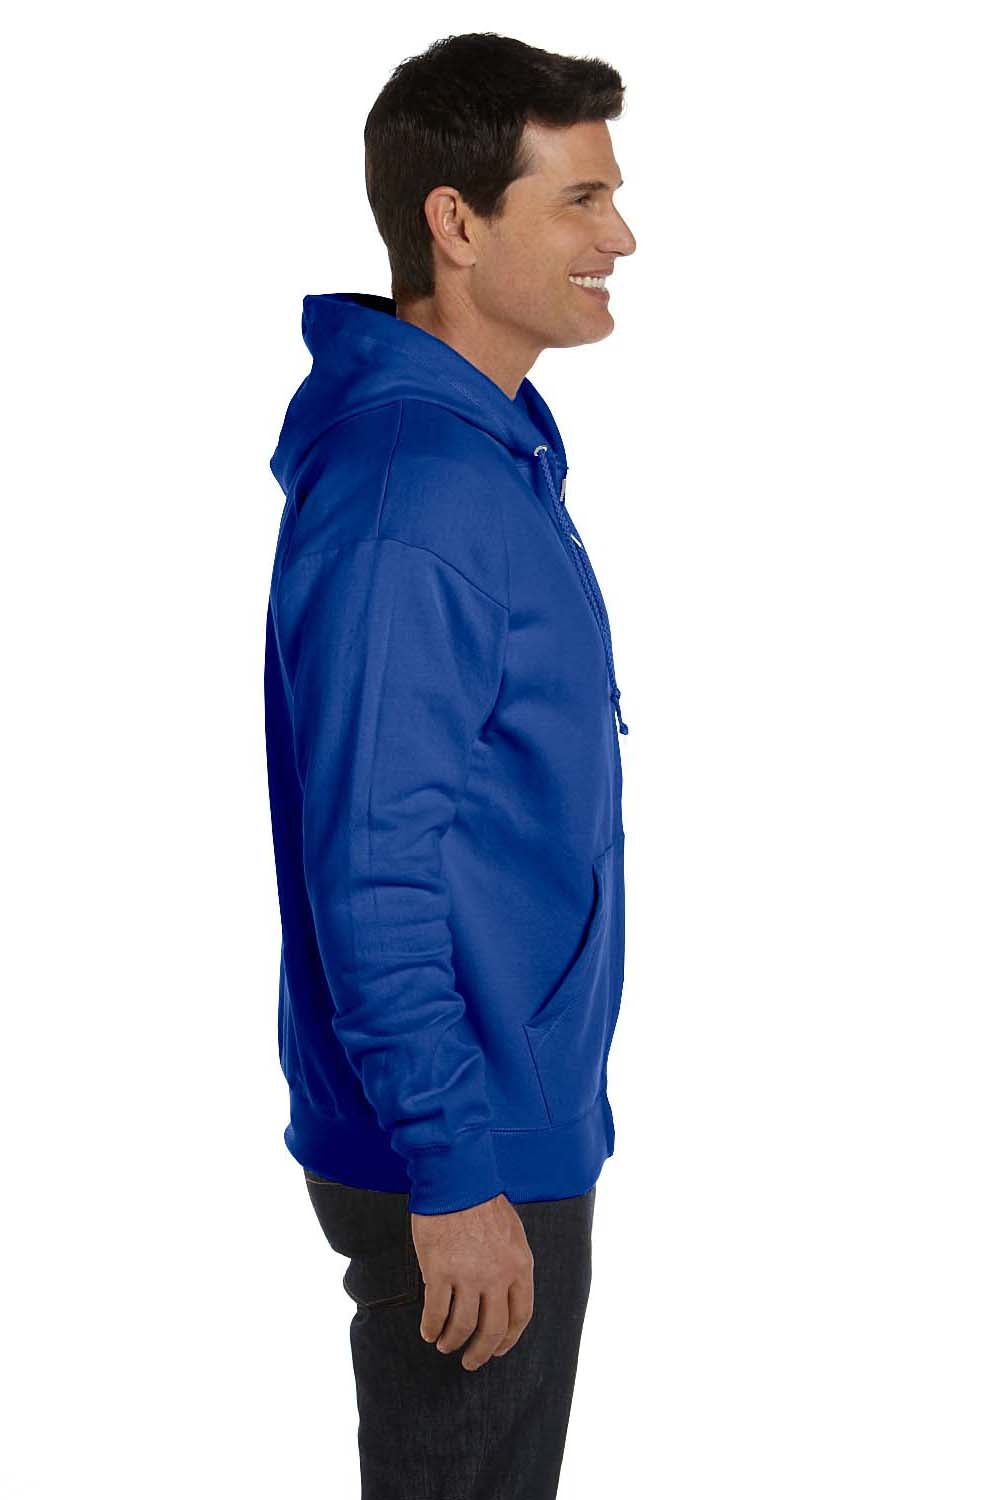 Hanes P180 Mens EcoSmart Print Pro XP Full Zip Hooded Sweatshirt Hoodie Royal Blue Side